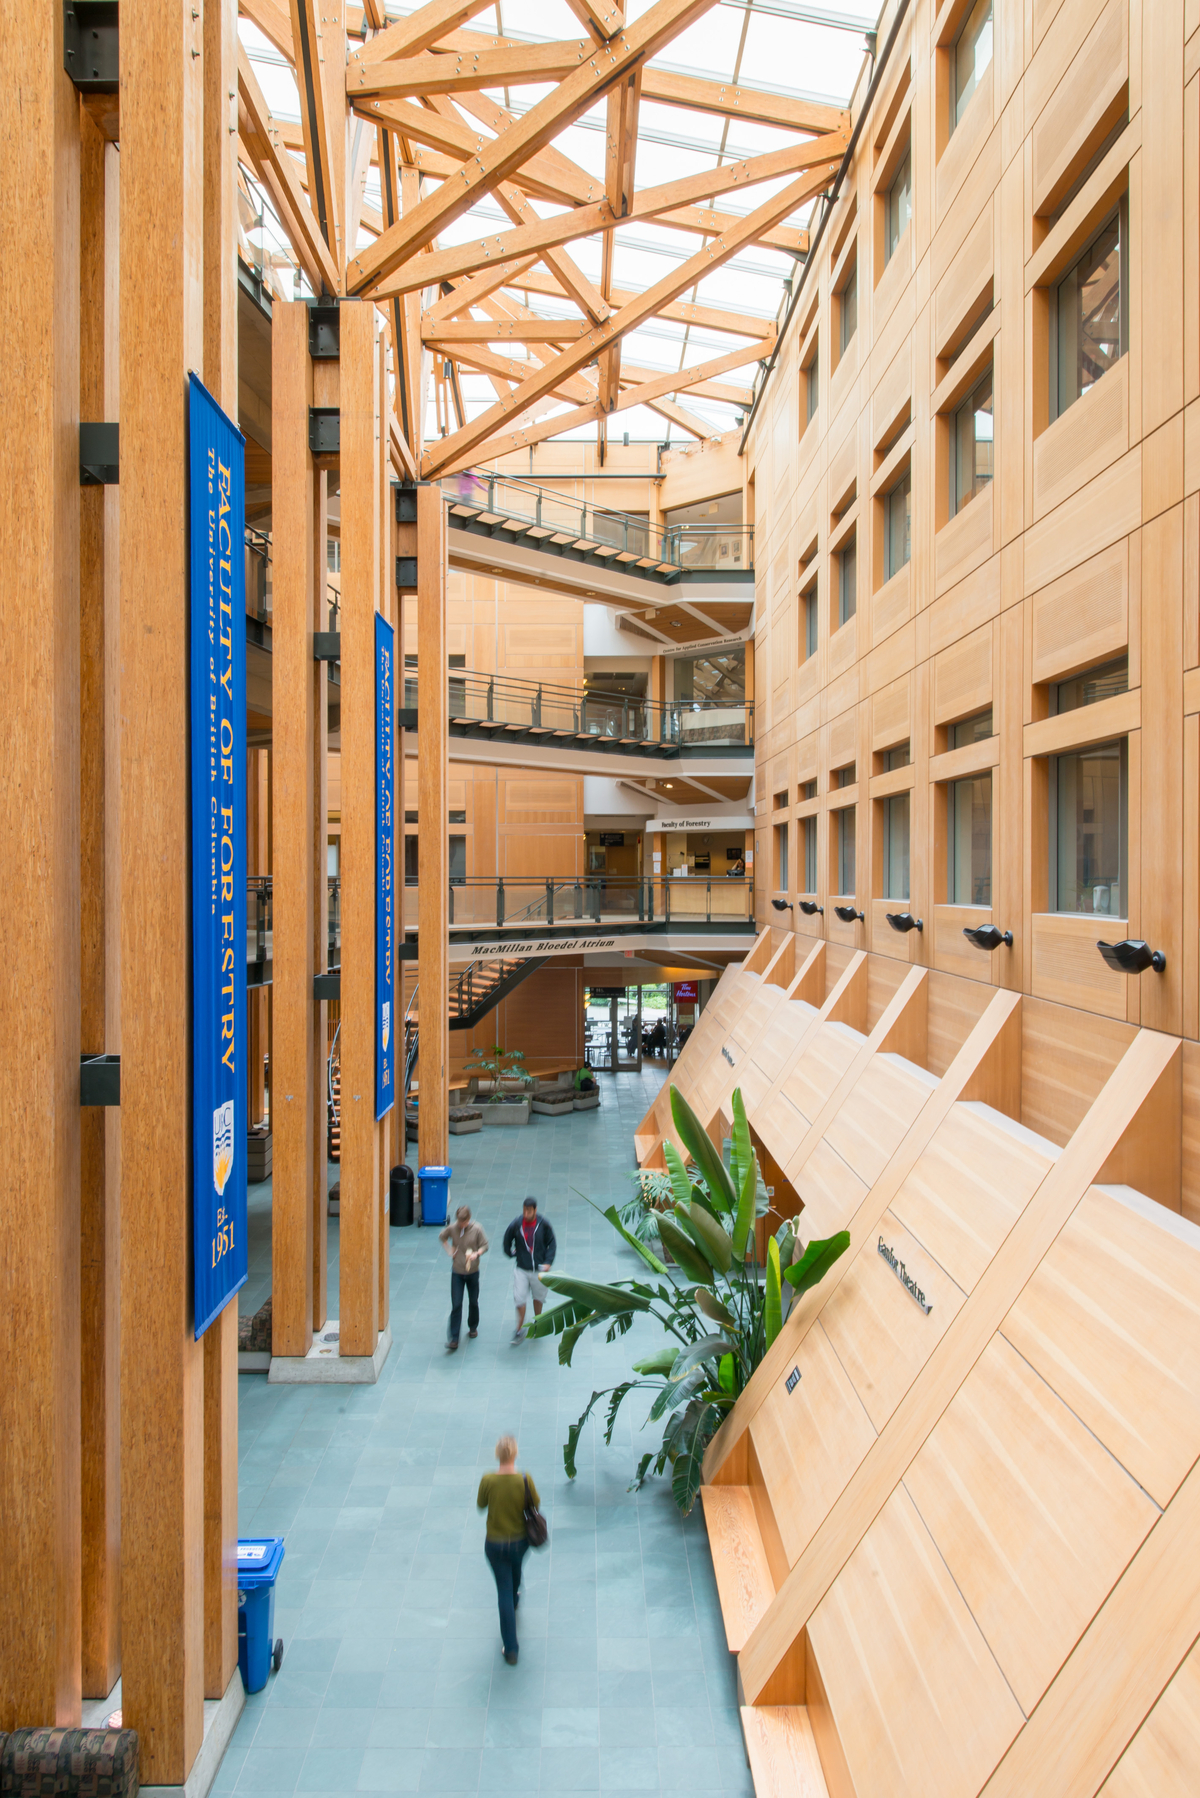 多层木材和装饰木材，包括:墙板，楼梯台阶，平行绞线木材(PSL)柱，木材装饰和木制品展示在UBC森林科学中心主中庭的白天室内图像中